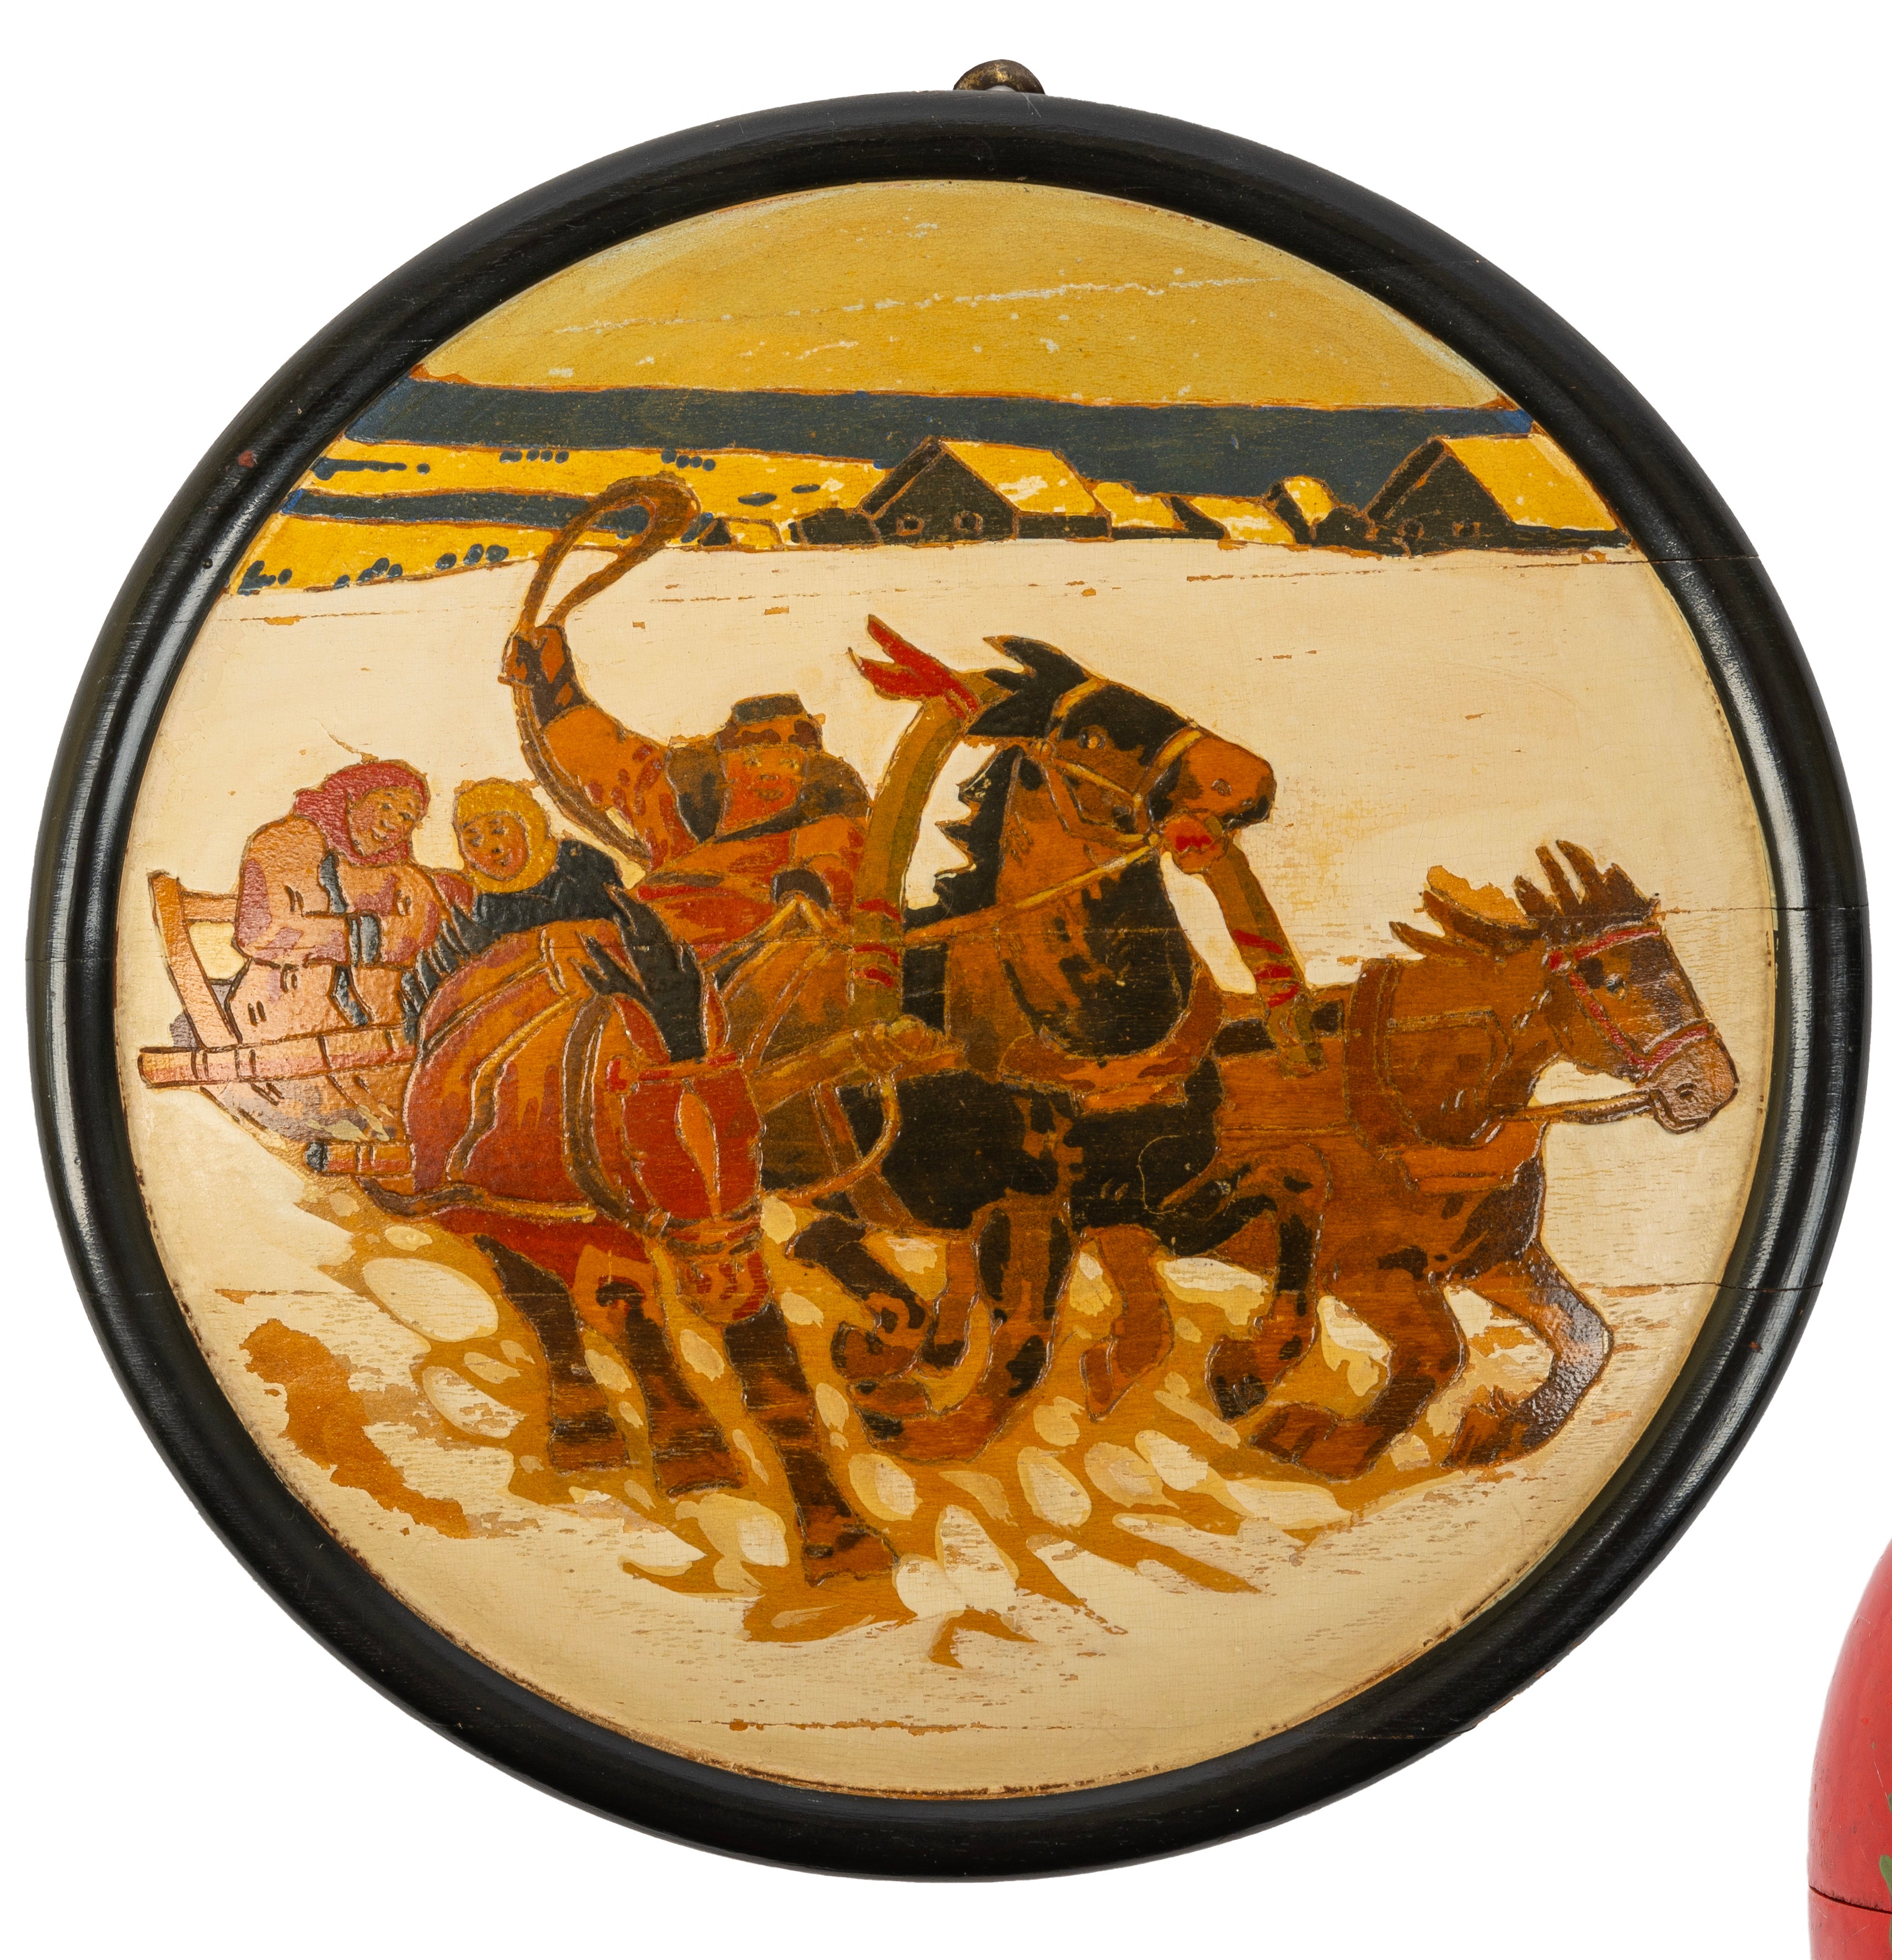 Elle représente une troïka tirant un traîneau russe traditionnel dans un paysage hivernal, les trois chevaux haletants étant poussés par un conducteur à barbe rousse portant une shapka, tandis que deux femmes enveloppées d'écharpes se blottissent à